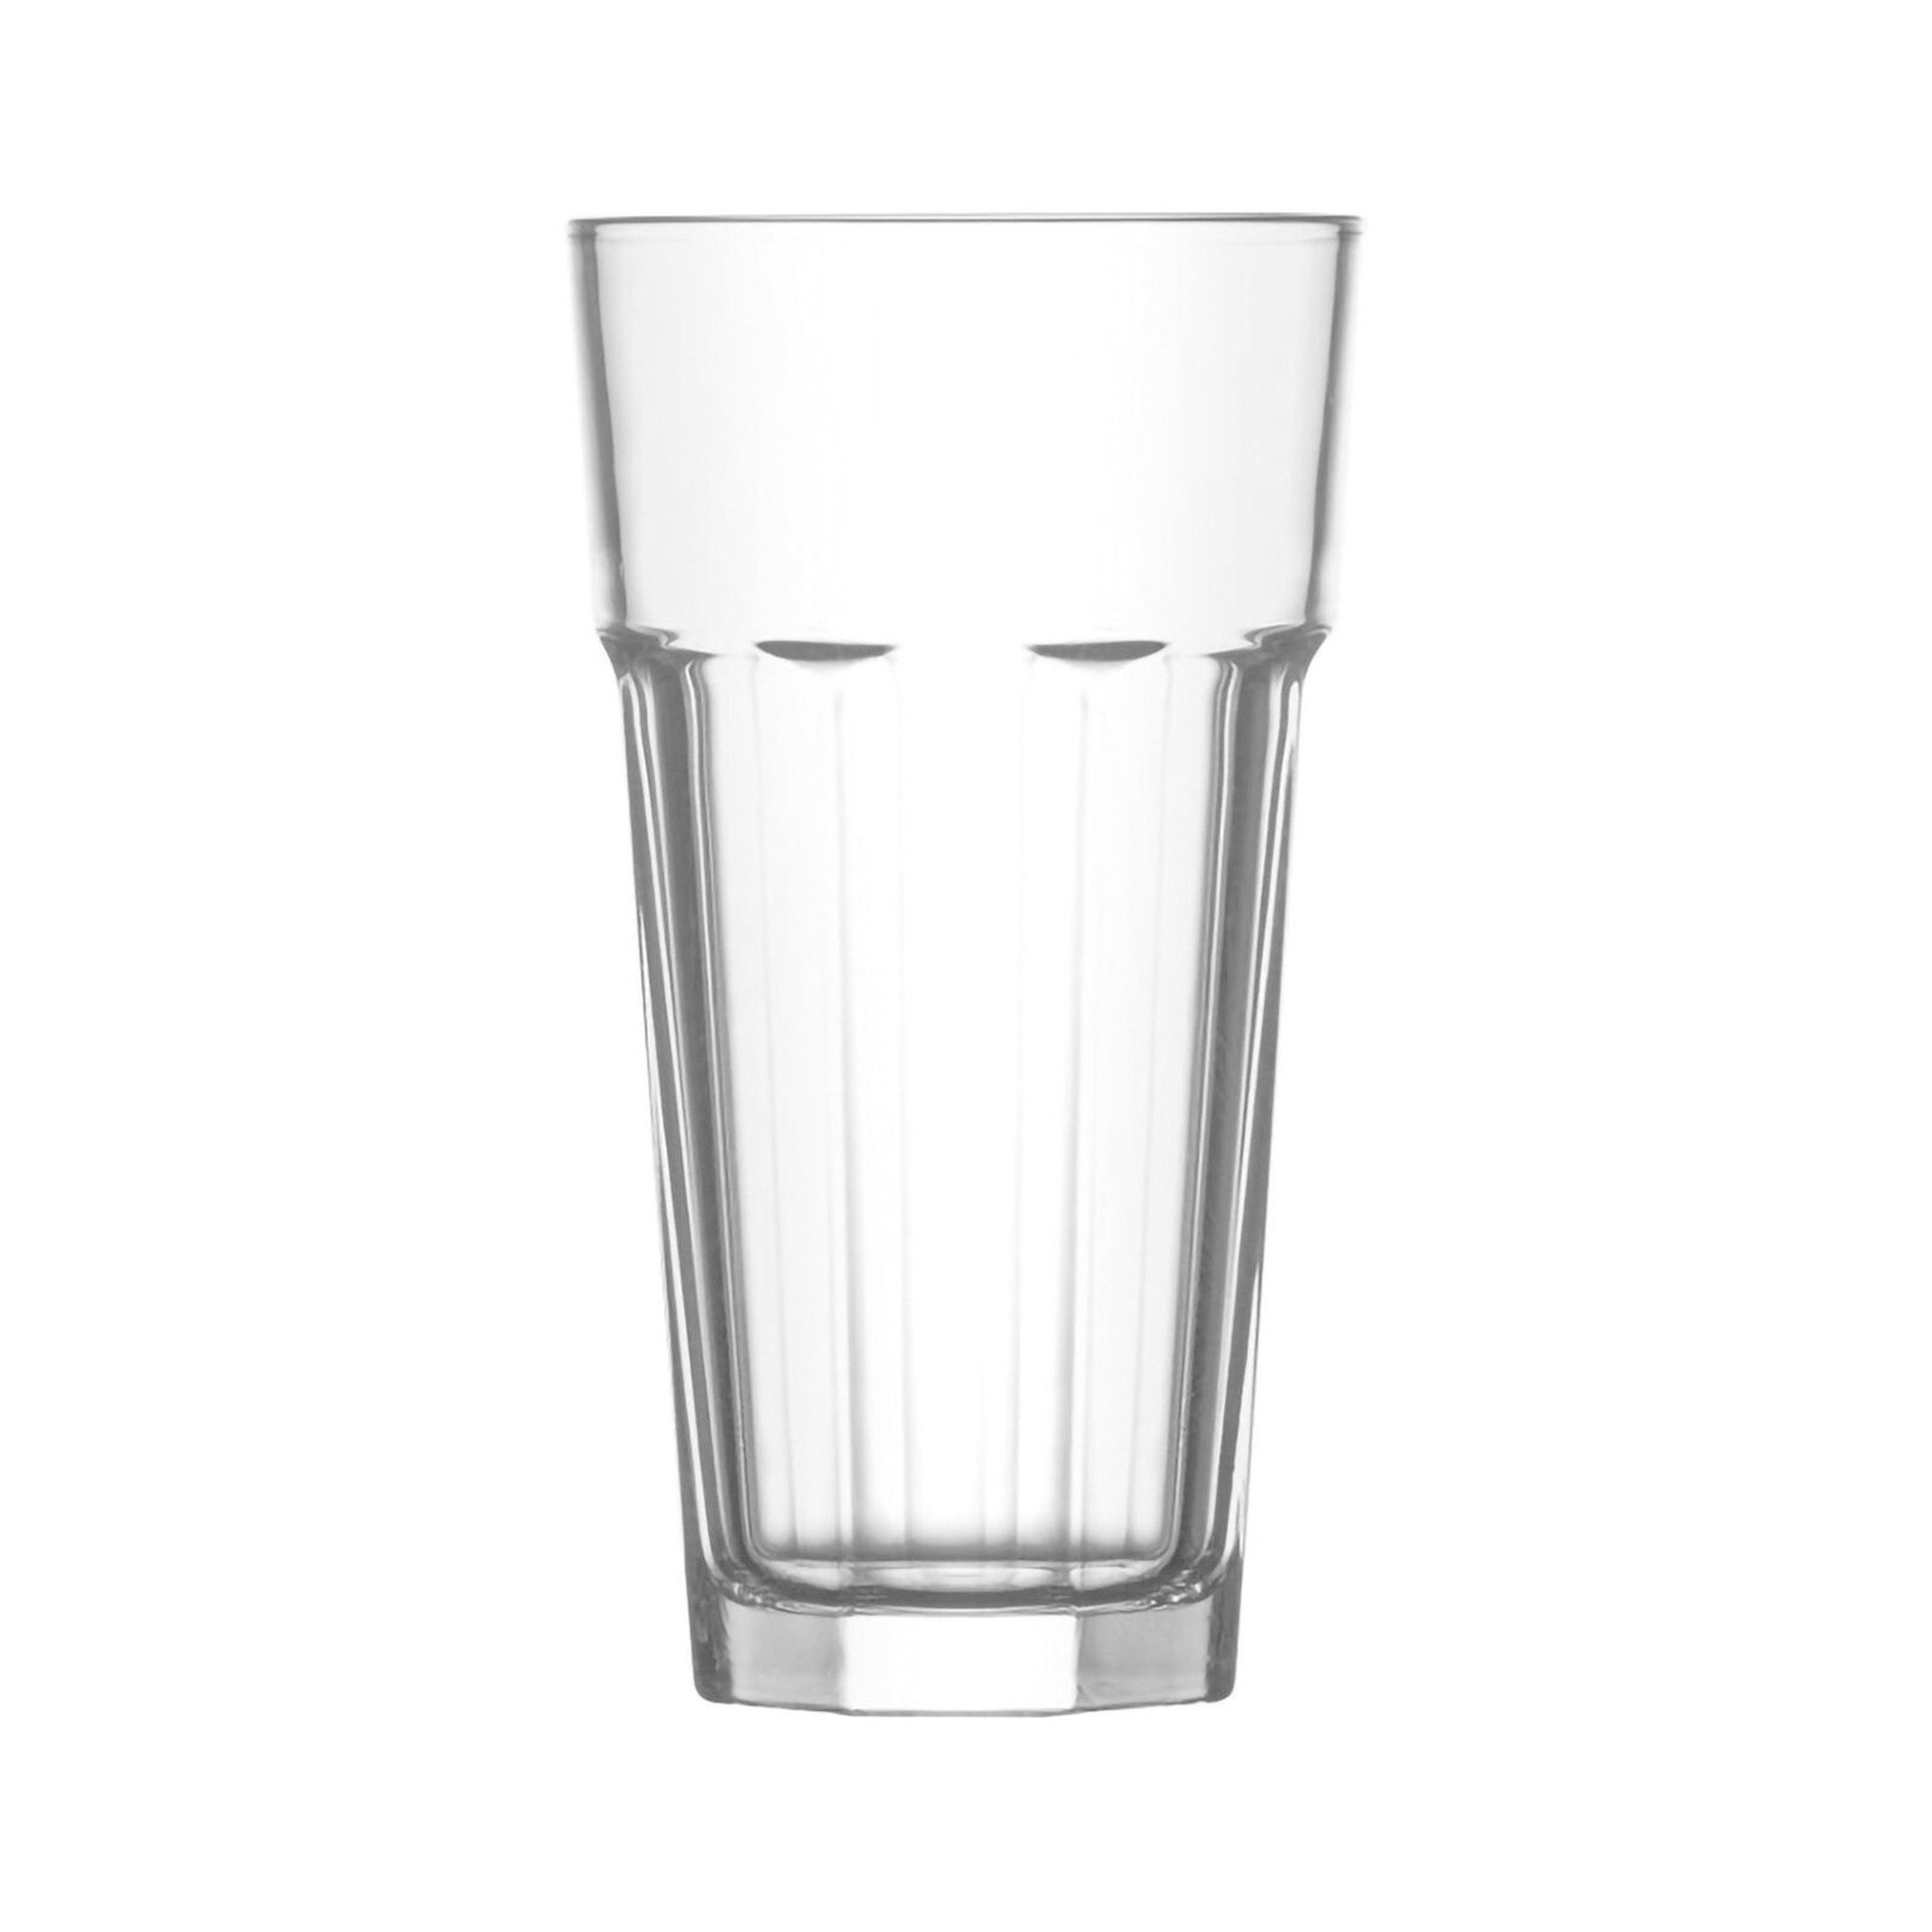 LAV Glas Gläser-Set 6 teilig Serie ARAS 360 ml, Wasserglas, Trinkglas bruchfest, Glas